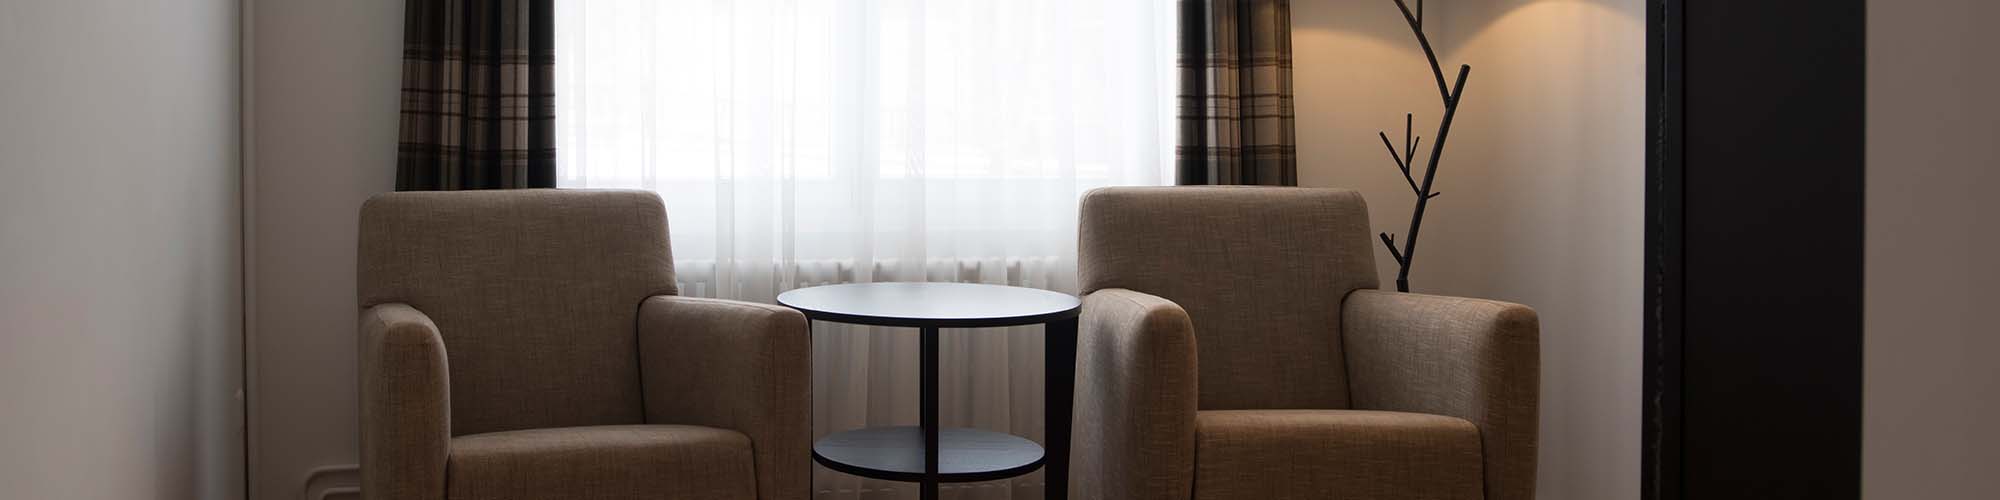 Hotel Davos - Chambre double spacieuse - avec coin de couchage séparé de la sphère habitée